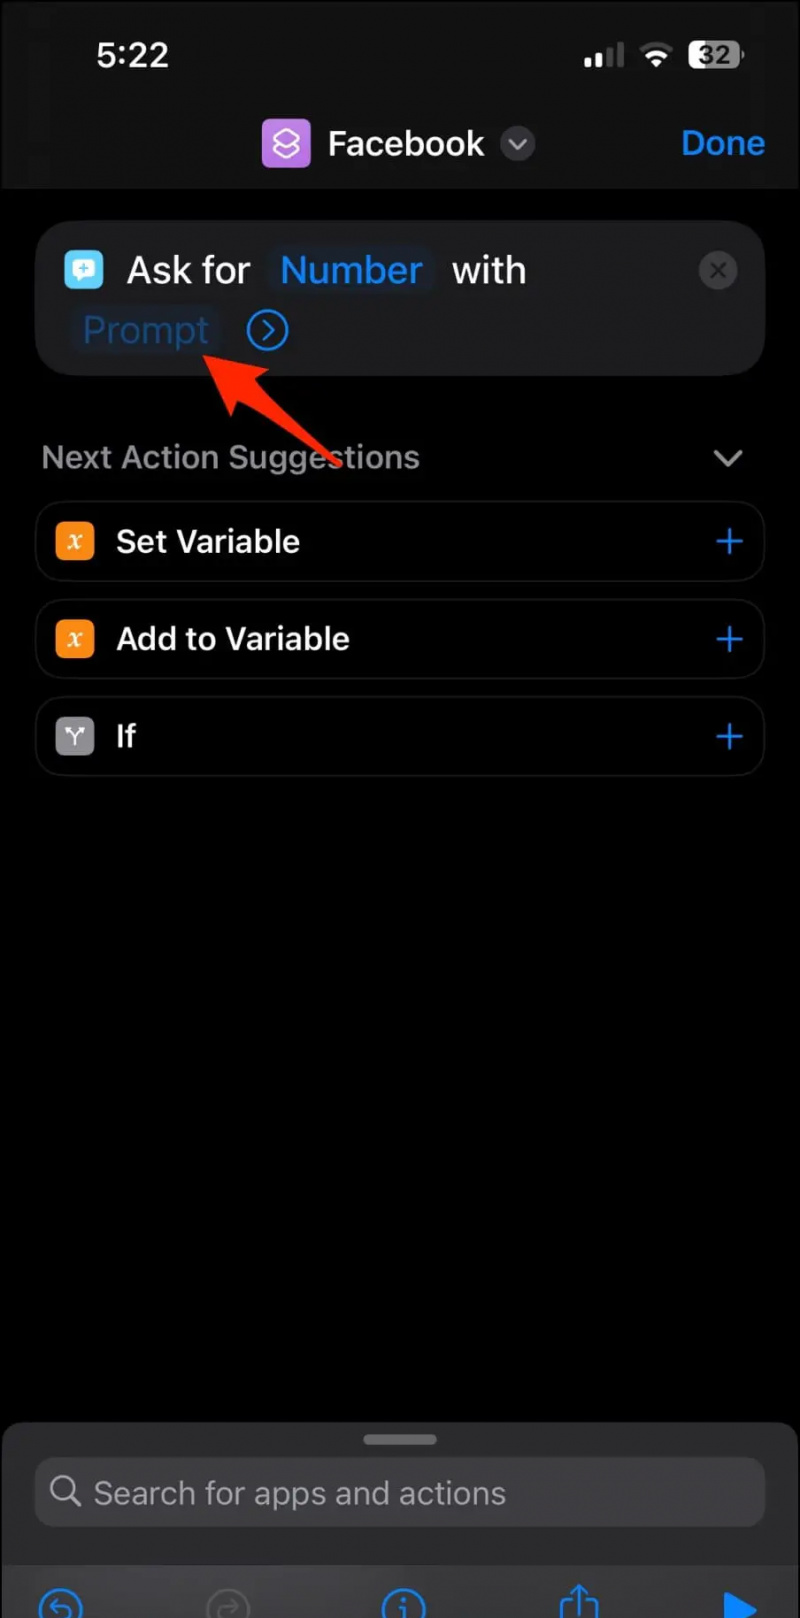   Faceți o comandă rapidă pentru aplicație protejată prin parolă pe iOS